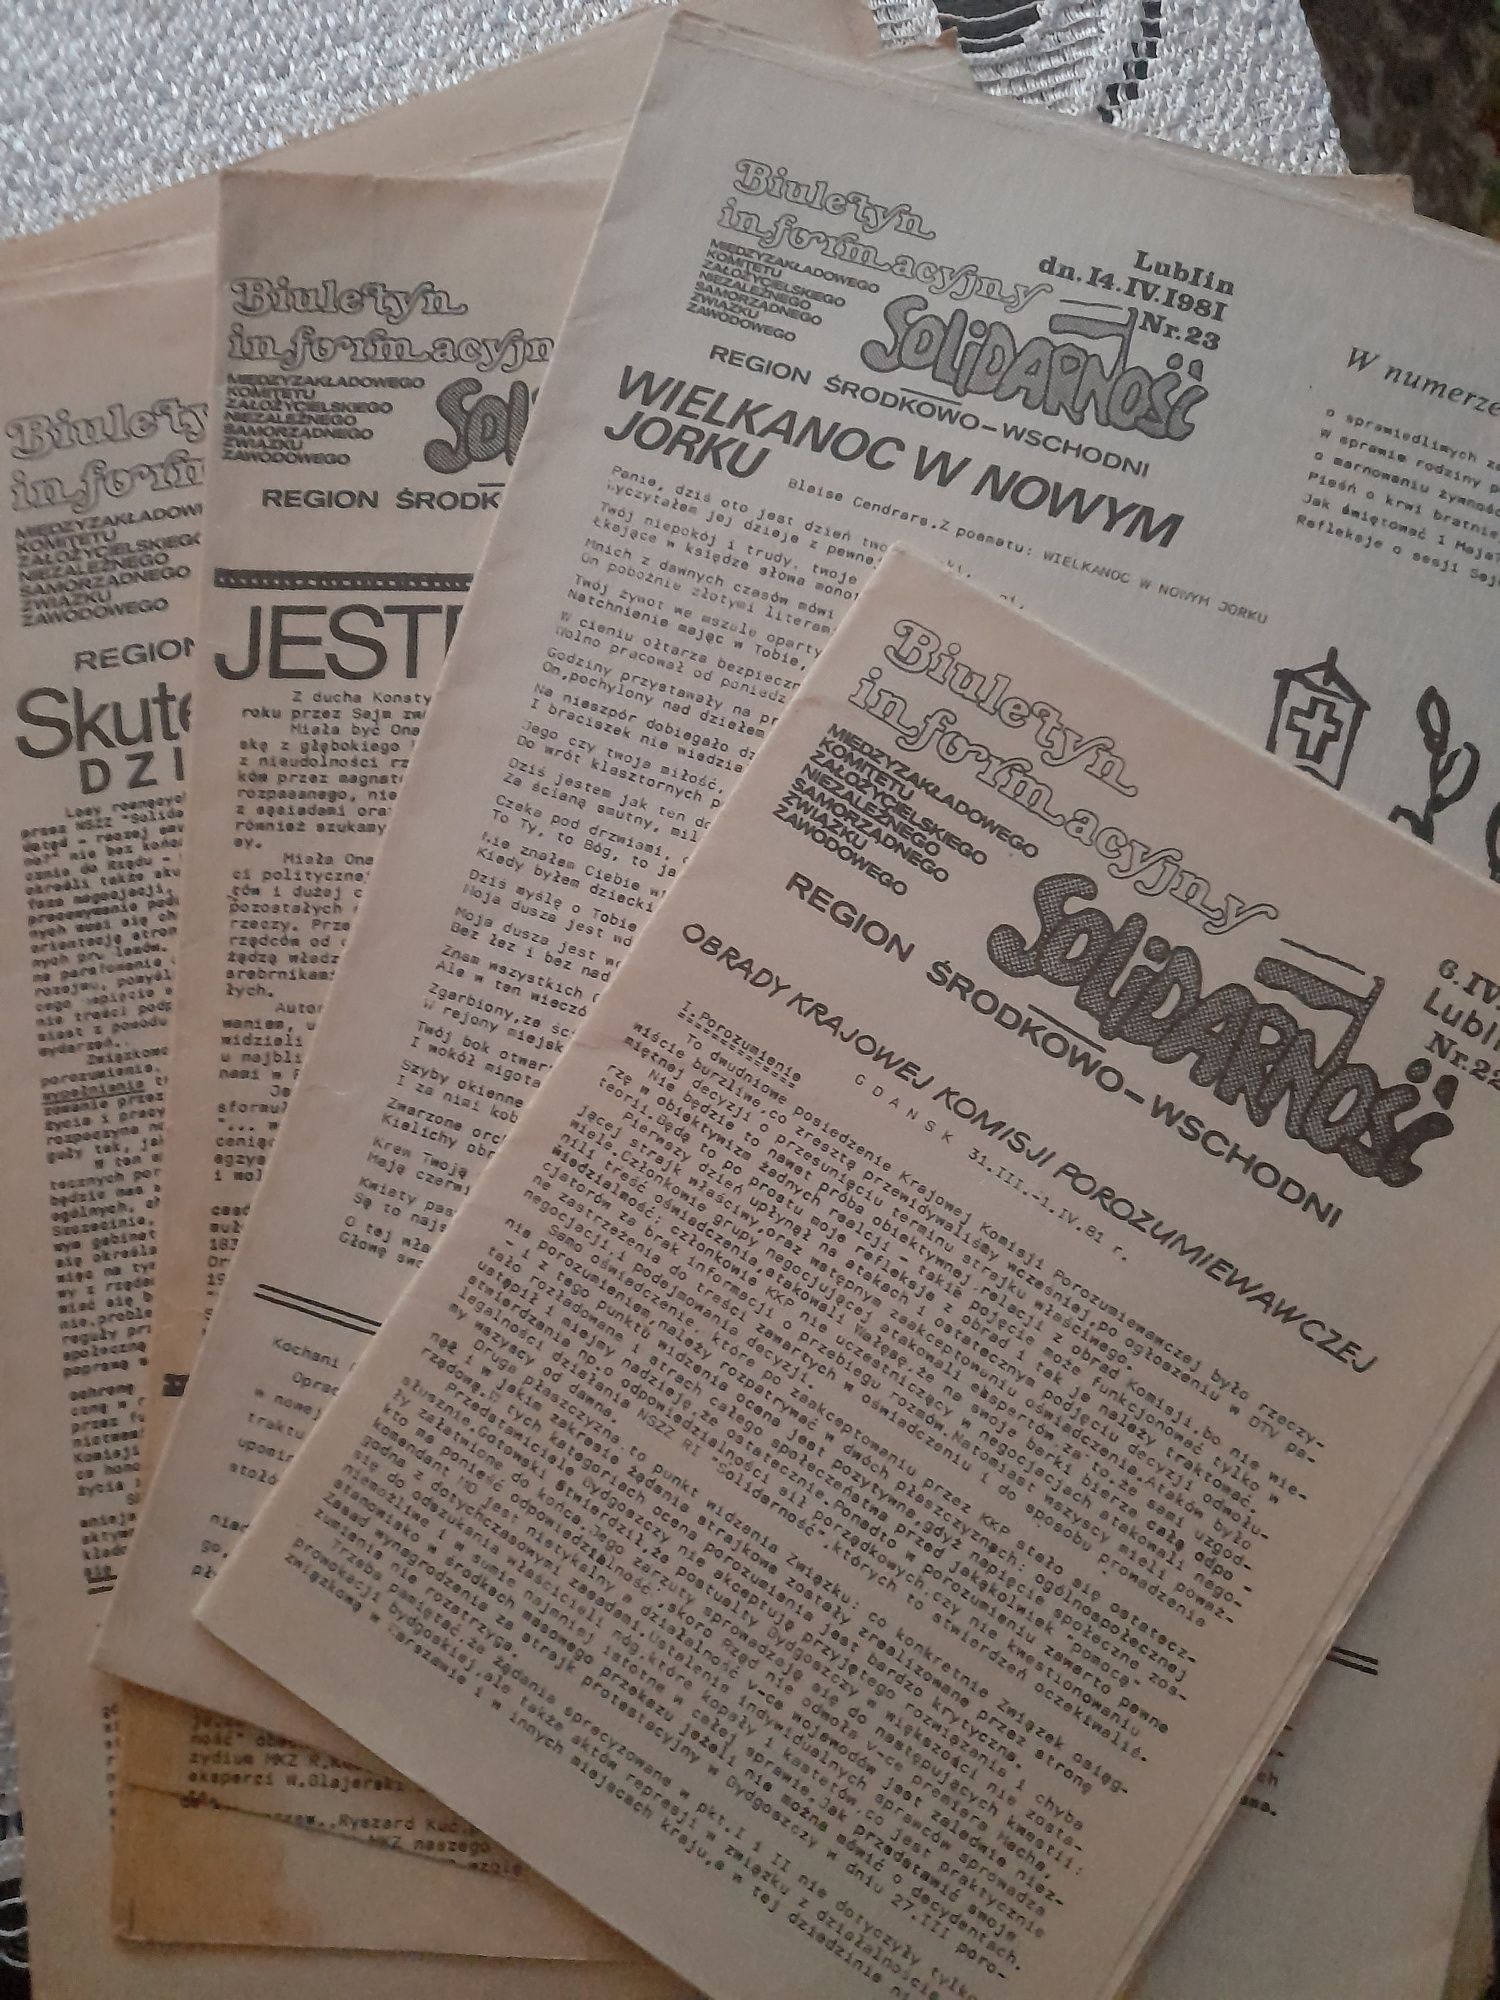 Dokumenty biuletyn informator zjazdowy solidarności 36 szt z 1981 r